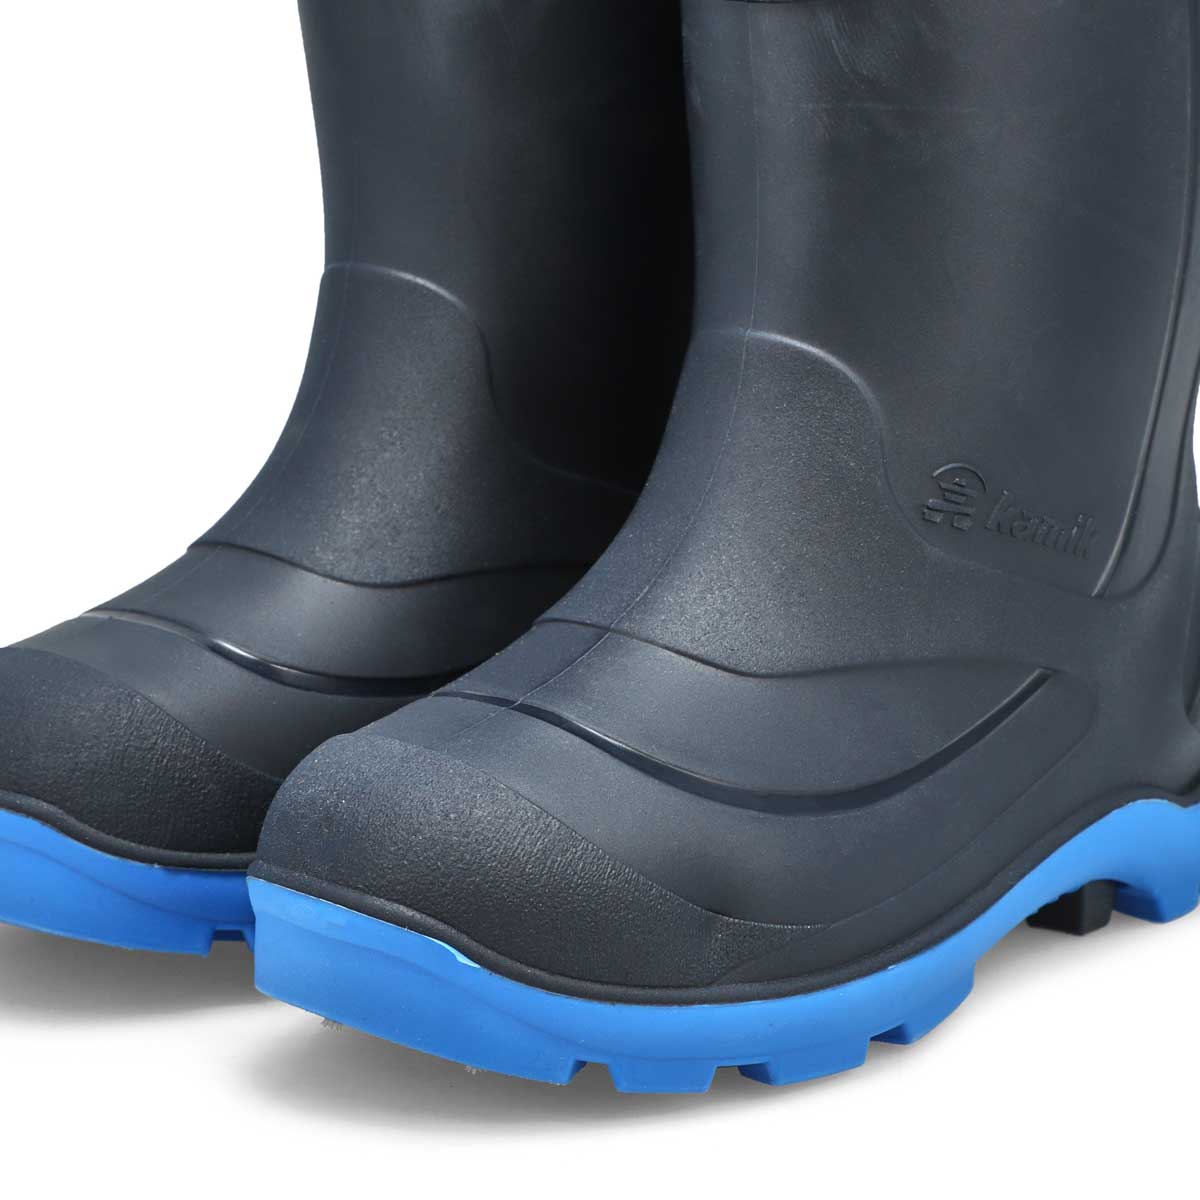 Kids' Snobuster 2 Waterproof Winter Boot - Navy